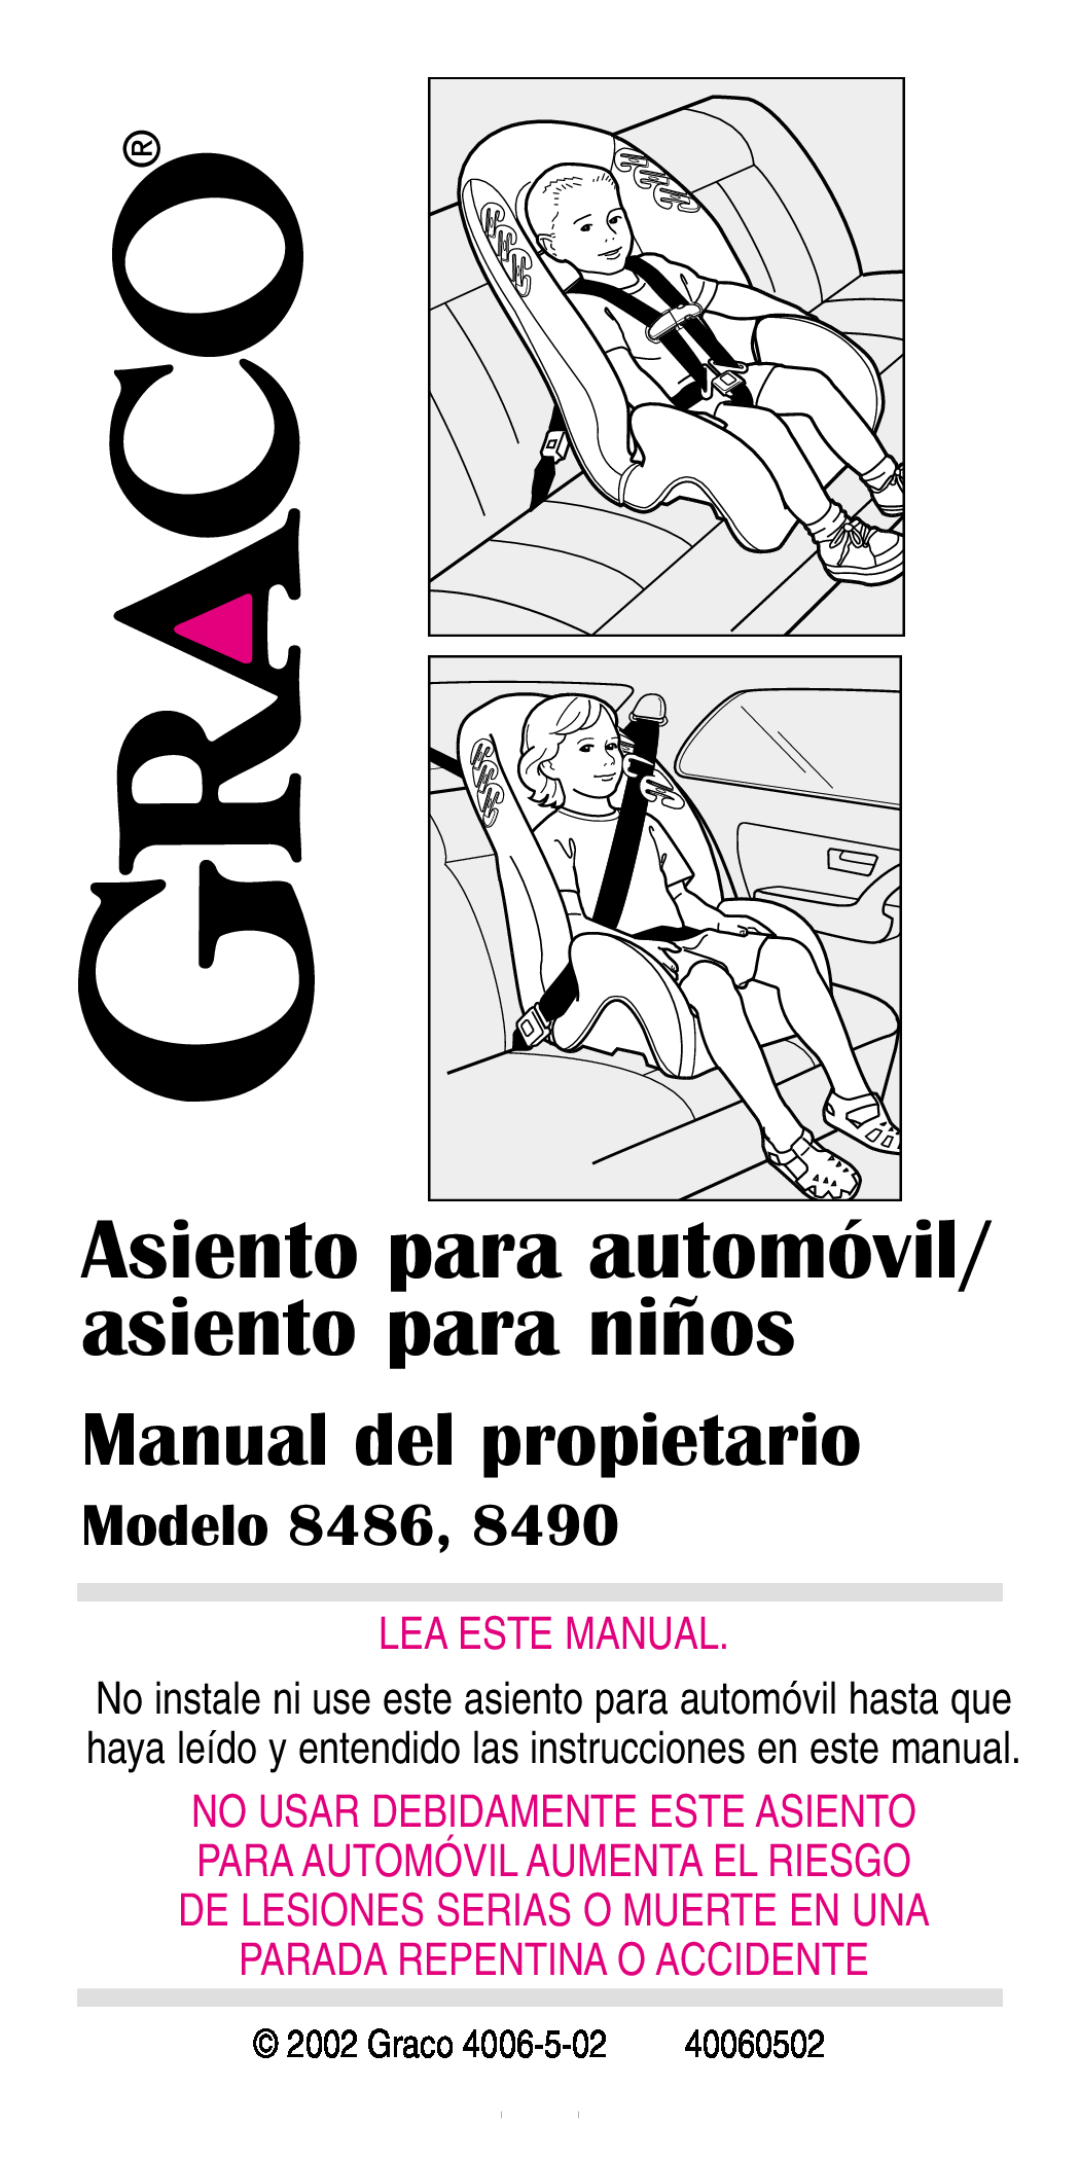 Graco 8490 Asiento para automóvil/ asiento para niños, Manual del propietario, Modelo 8486, Lea Este Manual, 40060502 